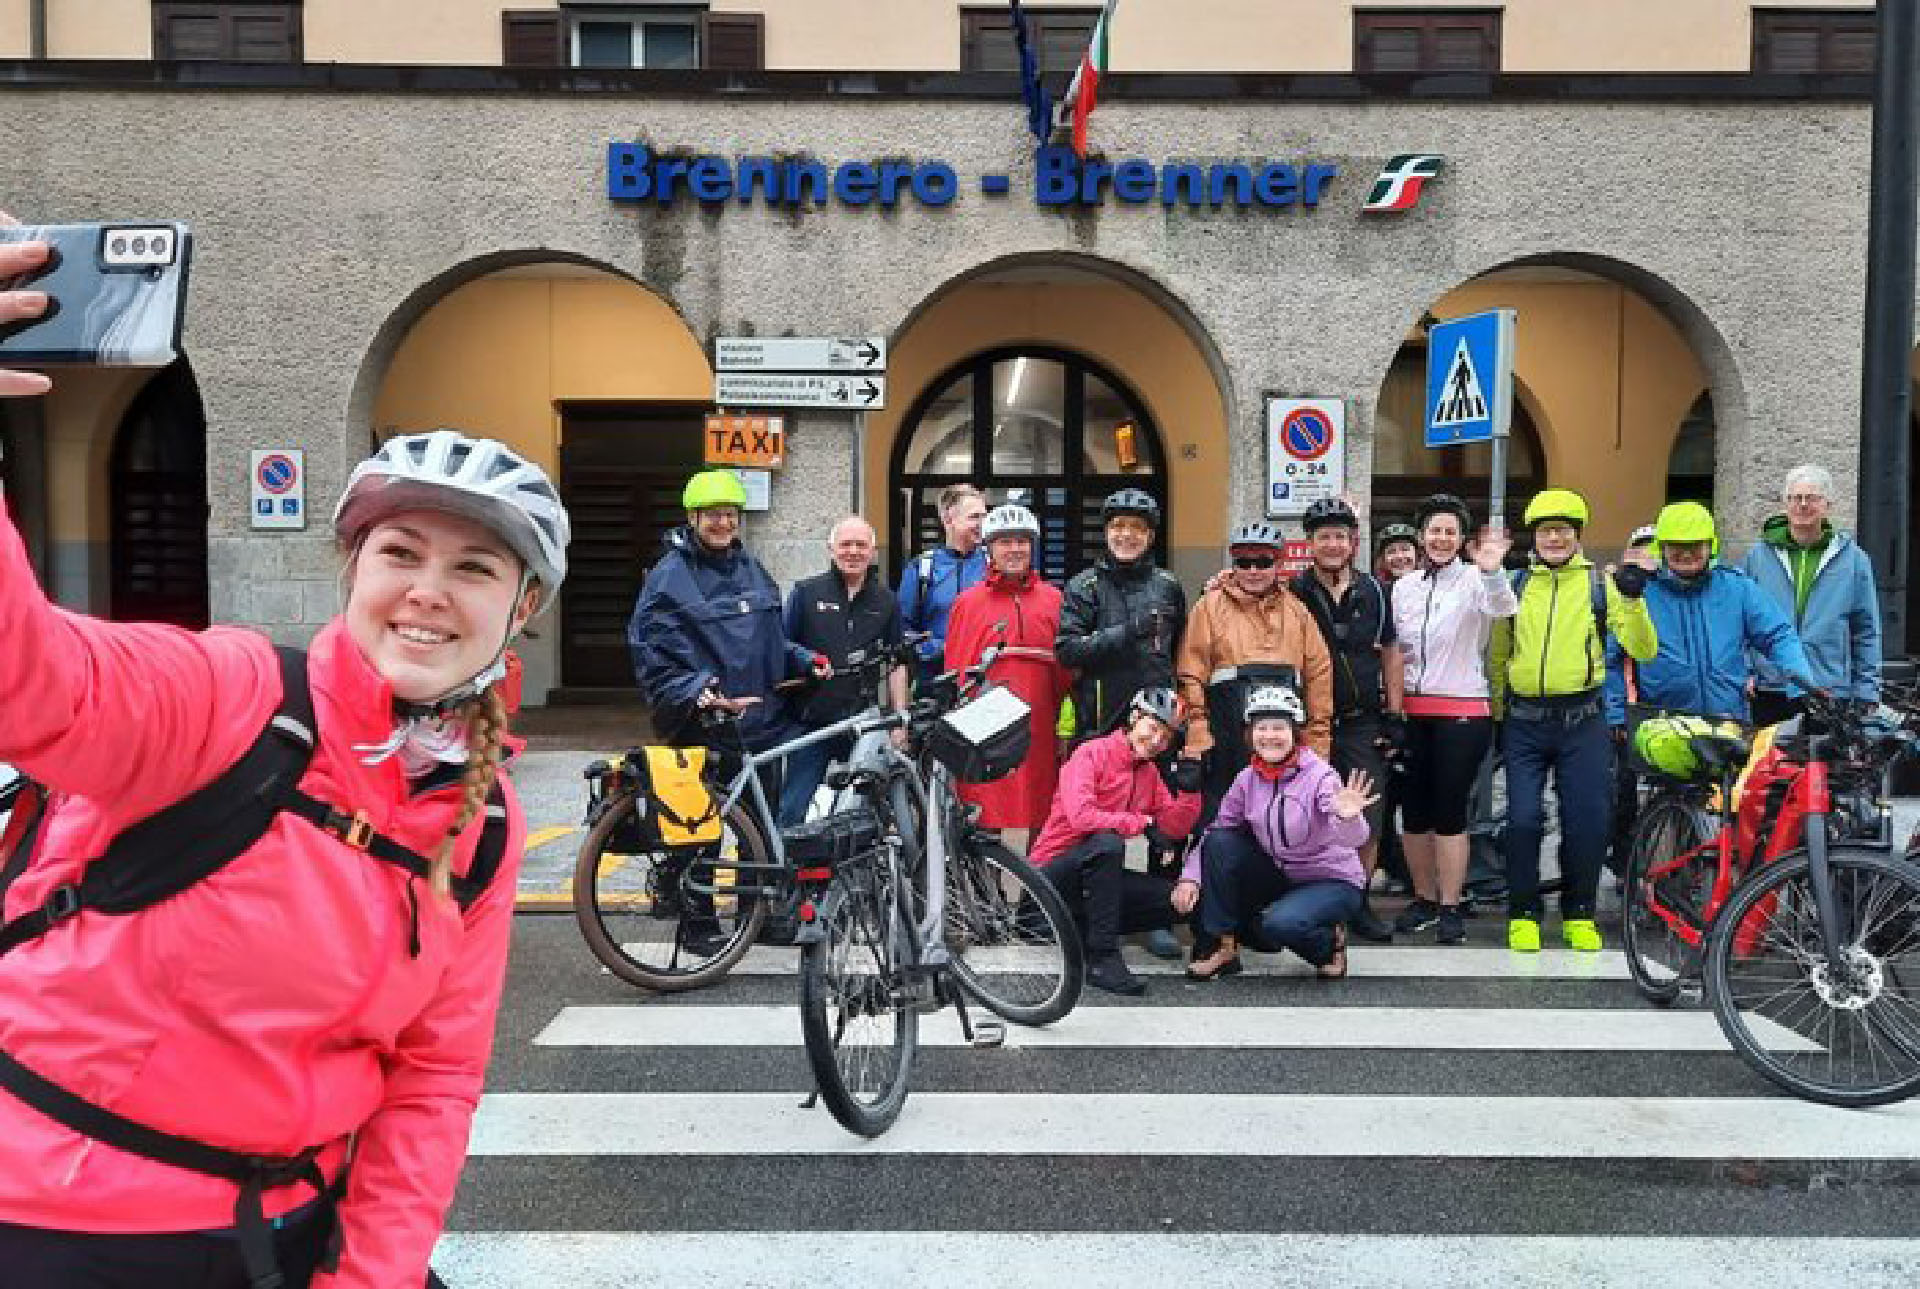 Le groupe de cyclistes, et les accompagnateurs, fait une photo souvenir à Brennero, une étapes de leur périple de 700 km à vélo | DR